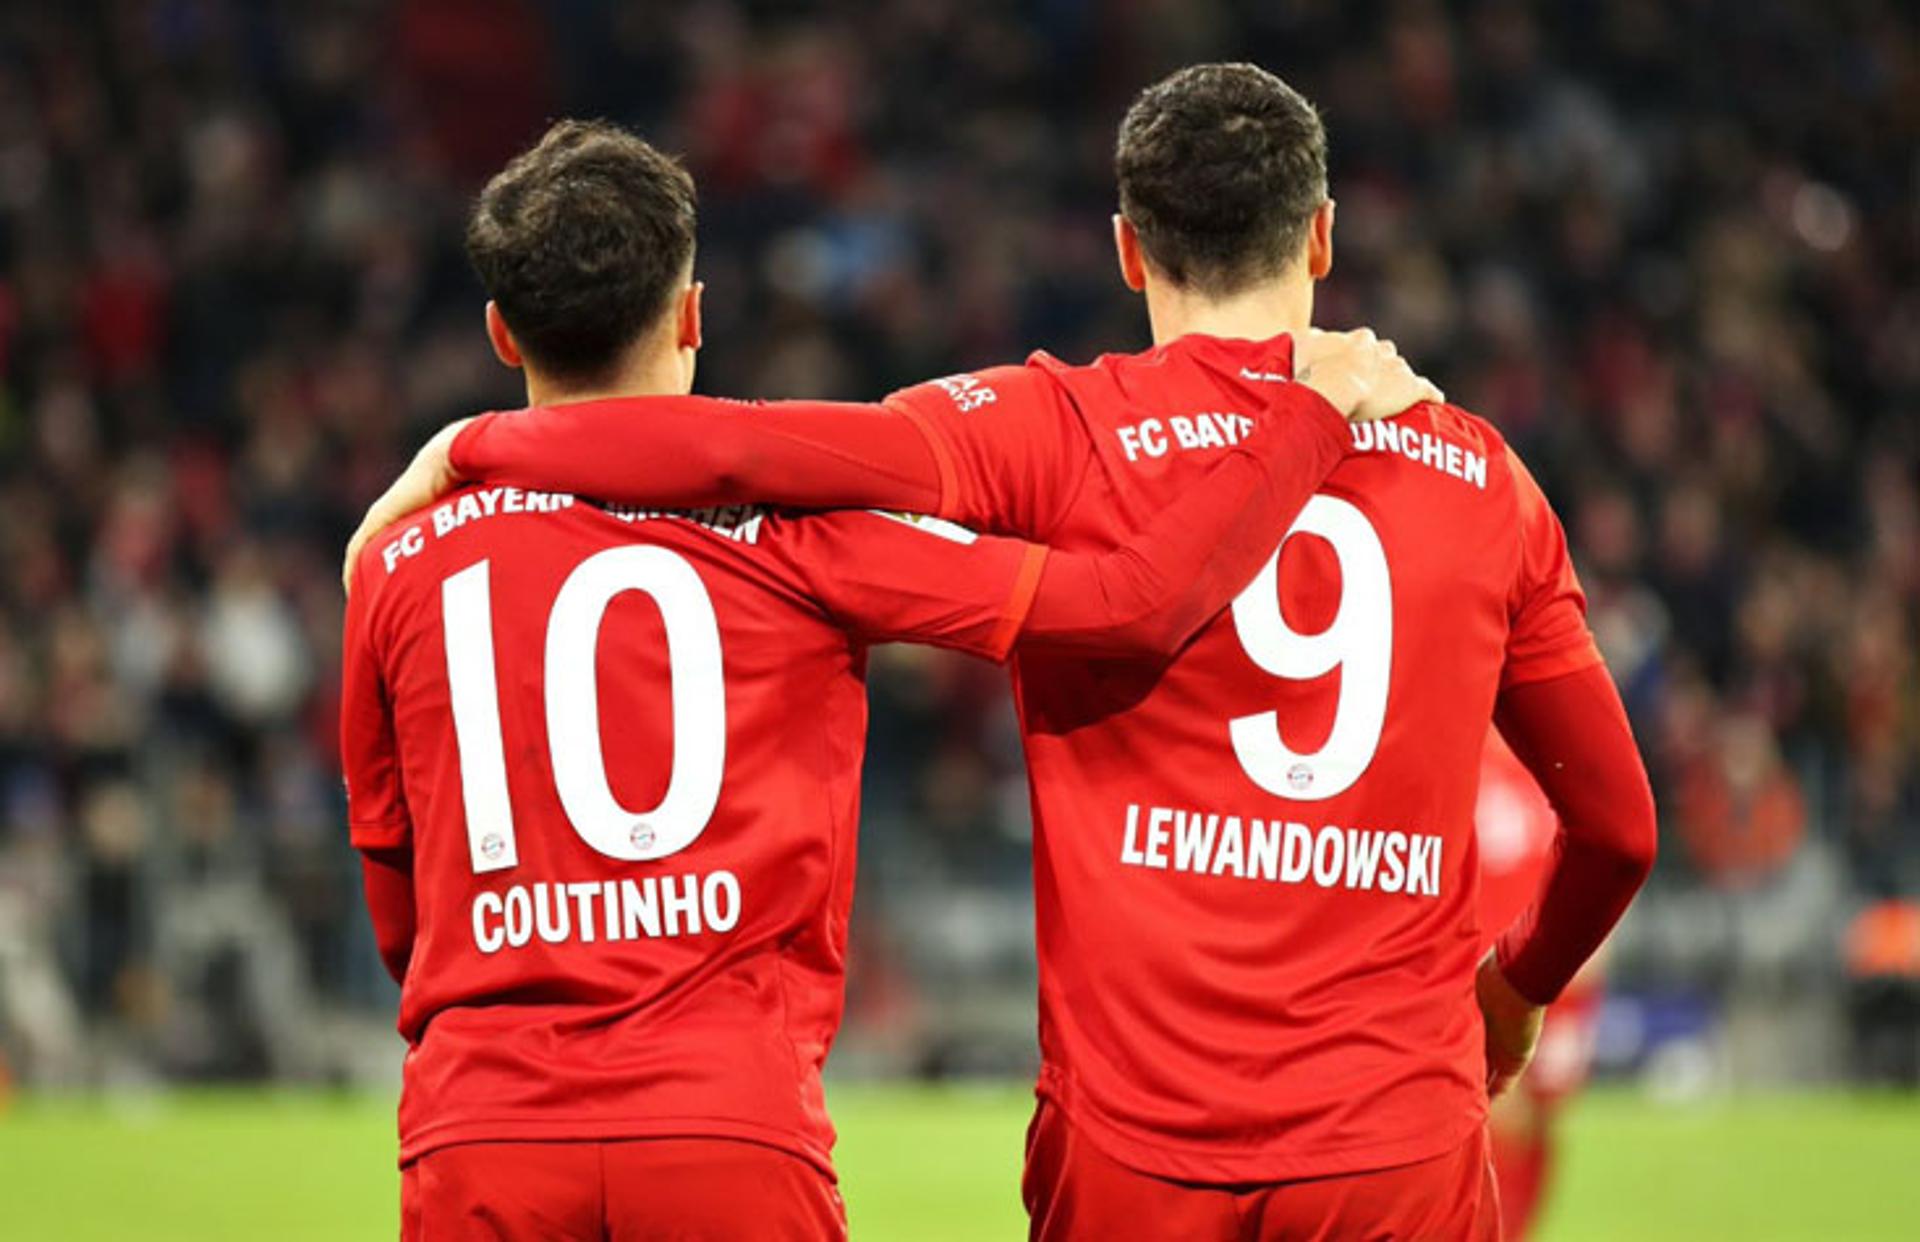 Bayern de Munique x Werder Bremen - Coutinho Lewandowski